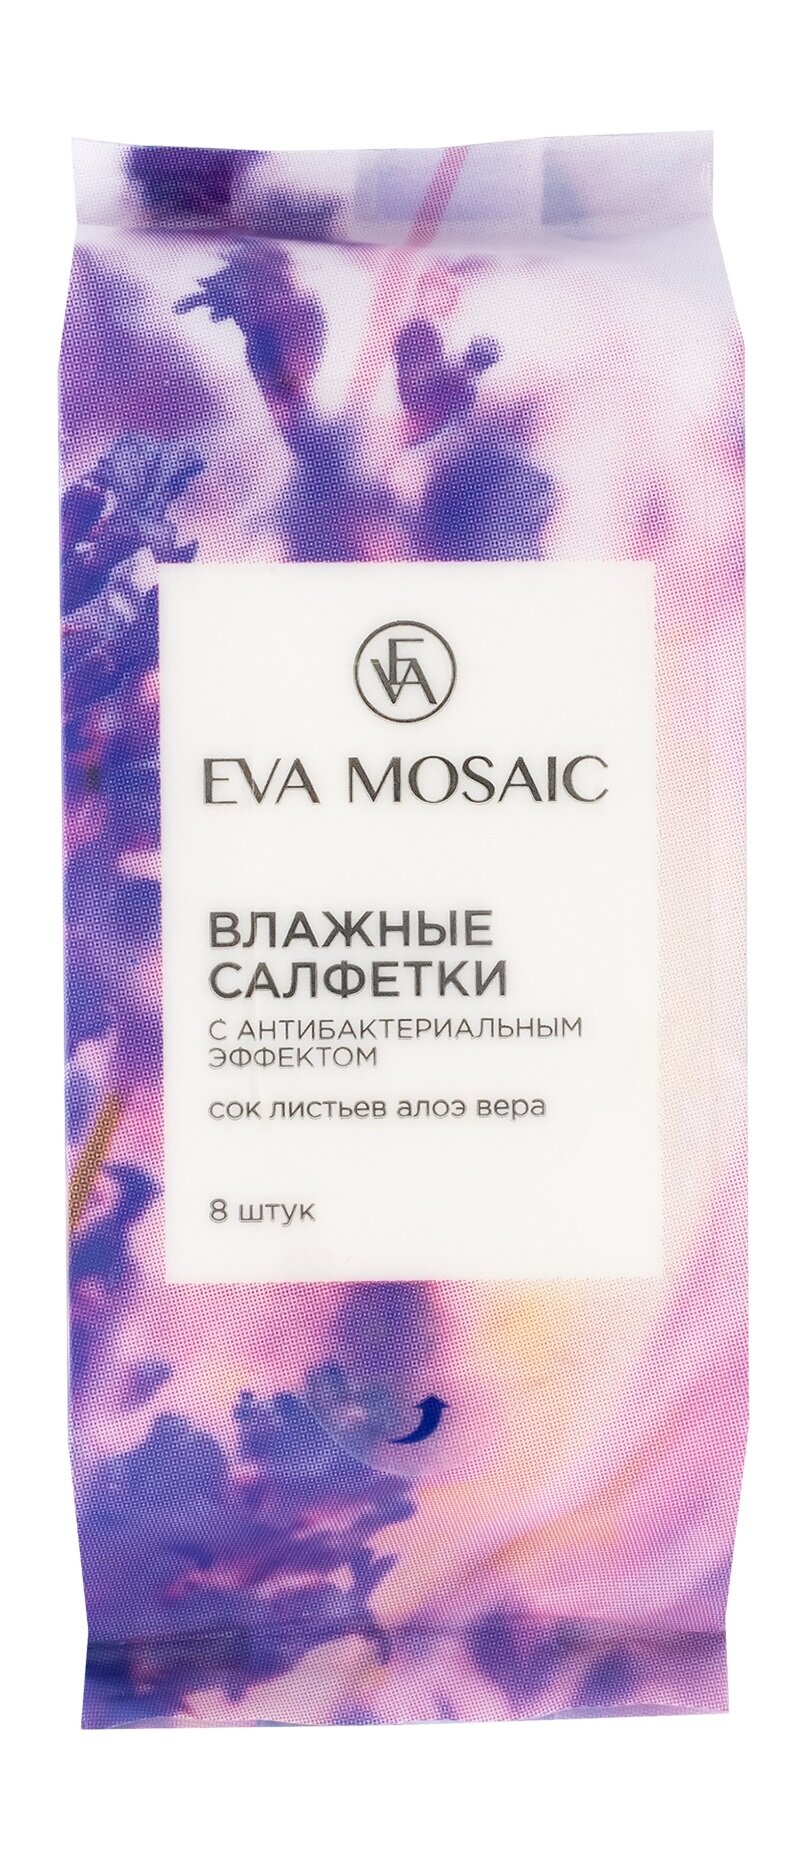 EVA MOSAIC Влажные салфетки с антибактериальным эффектом 8 шт